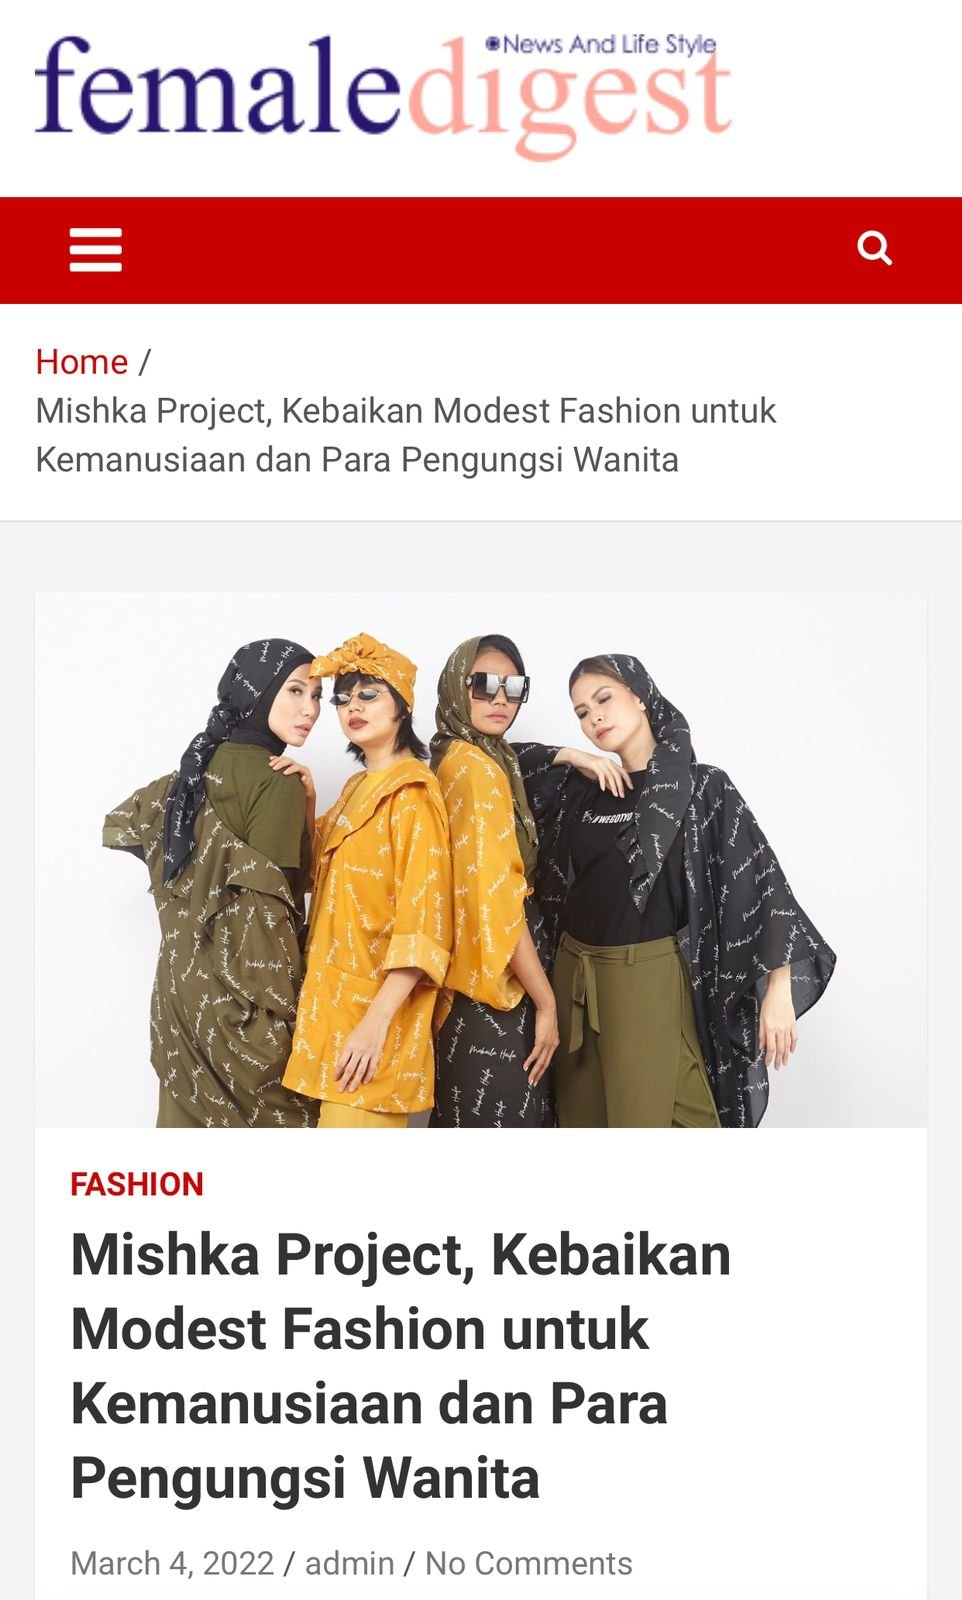 Mishka Project, Kebaikan Modest Fashion untuk Kemanusiaan dan Para Pengungsi Wanita